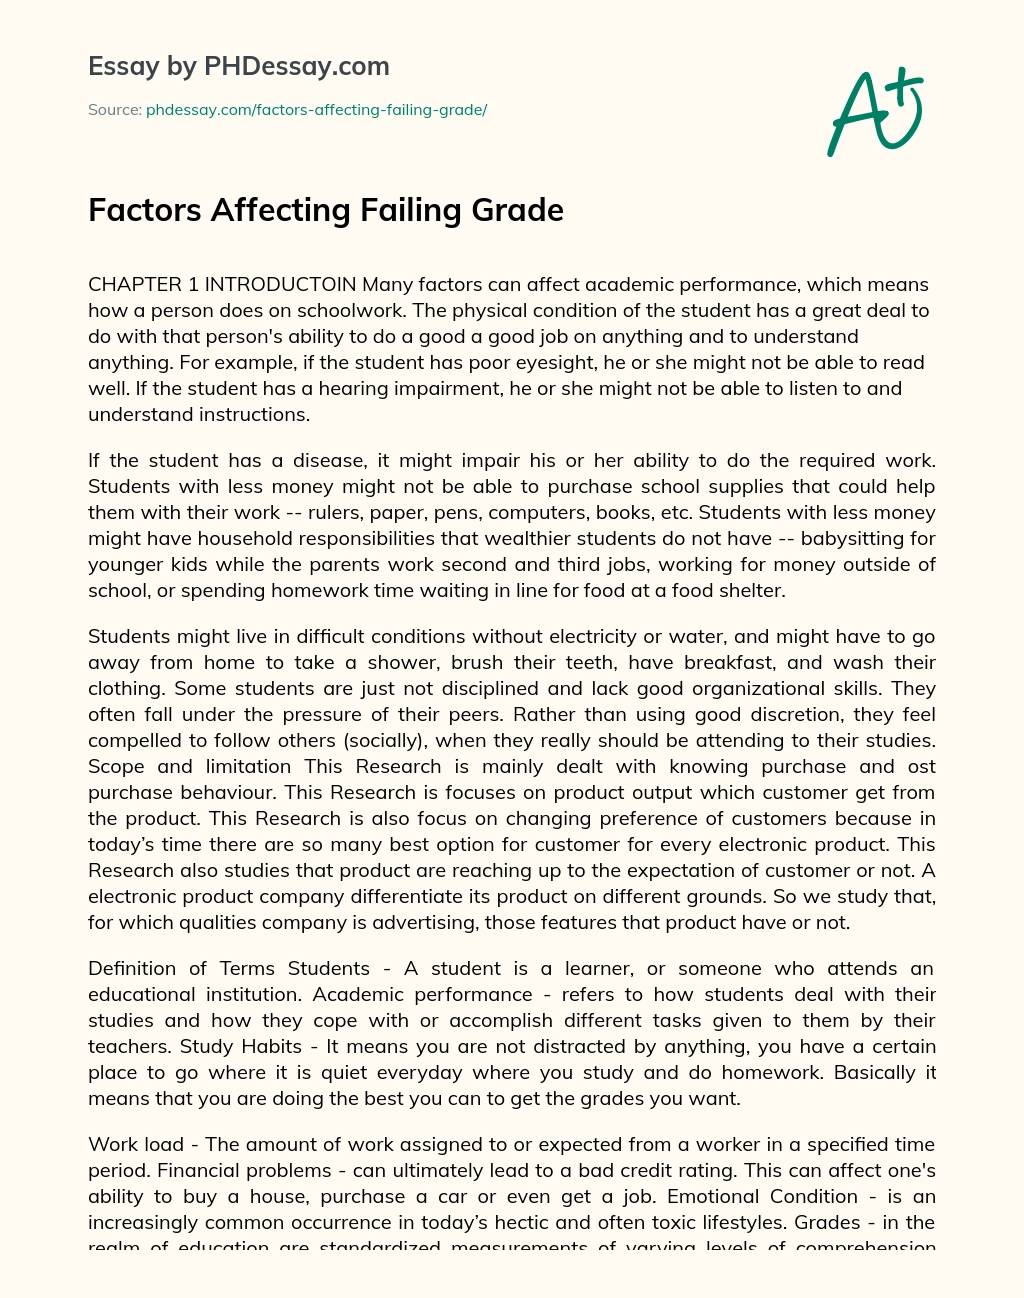 Factors Affecting Failing Grade essay